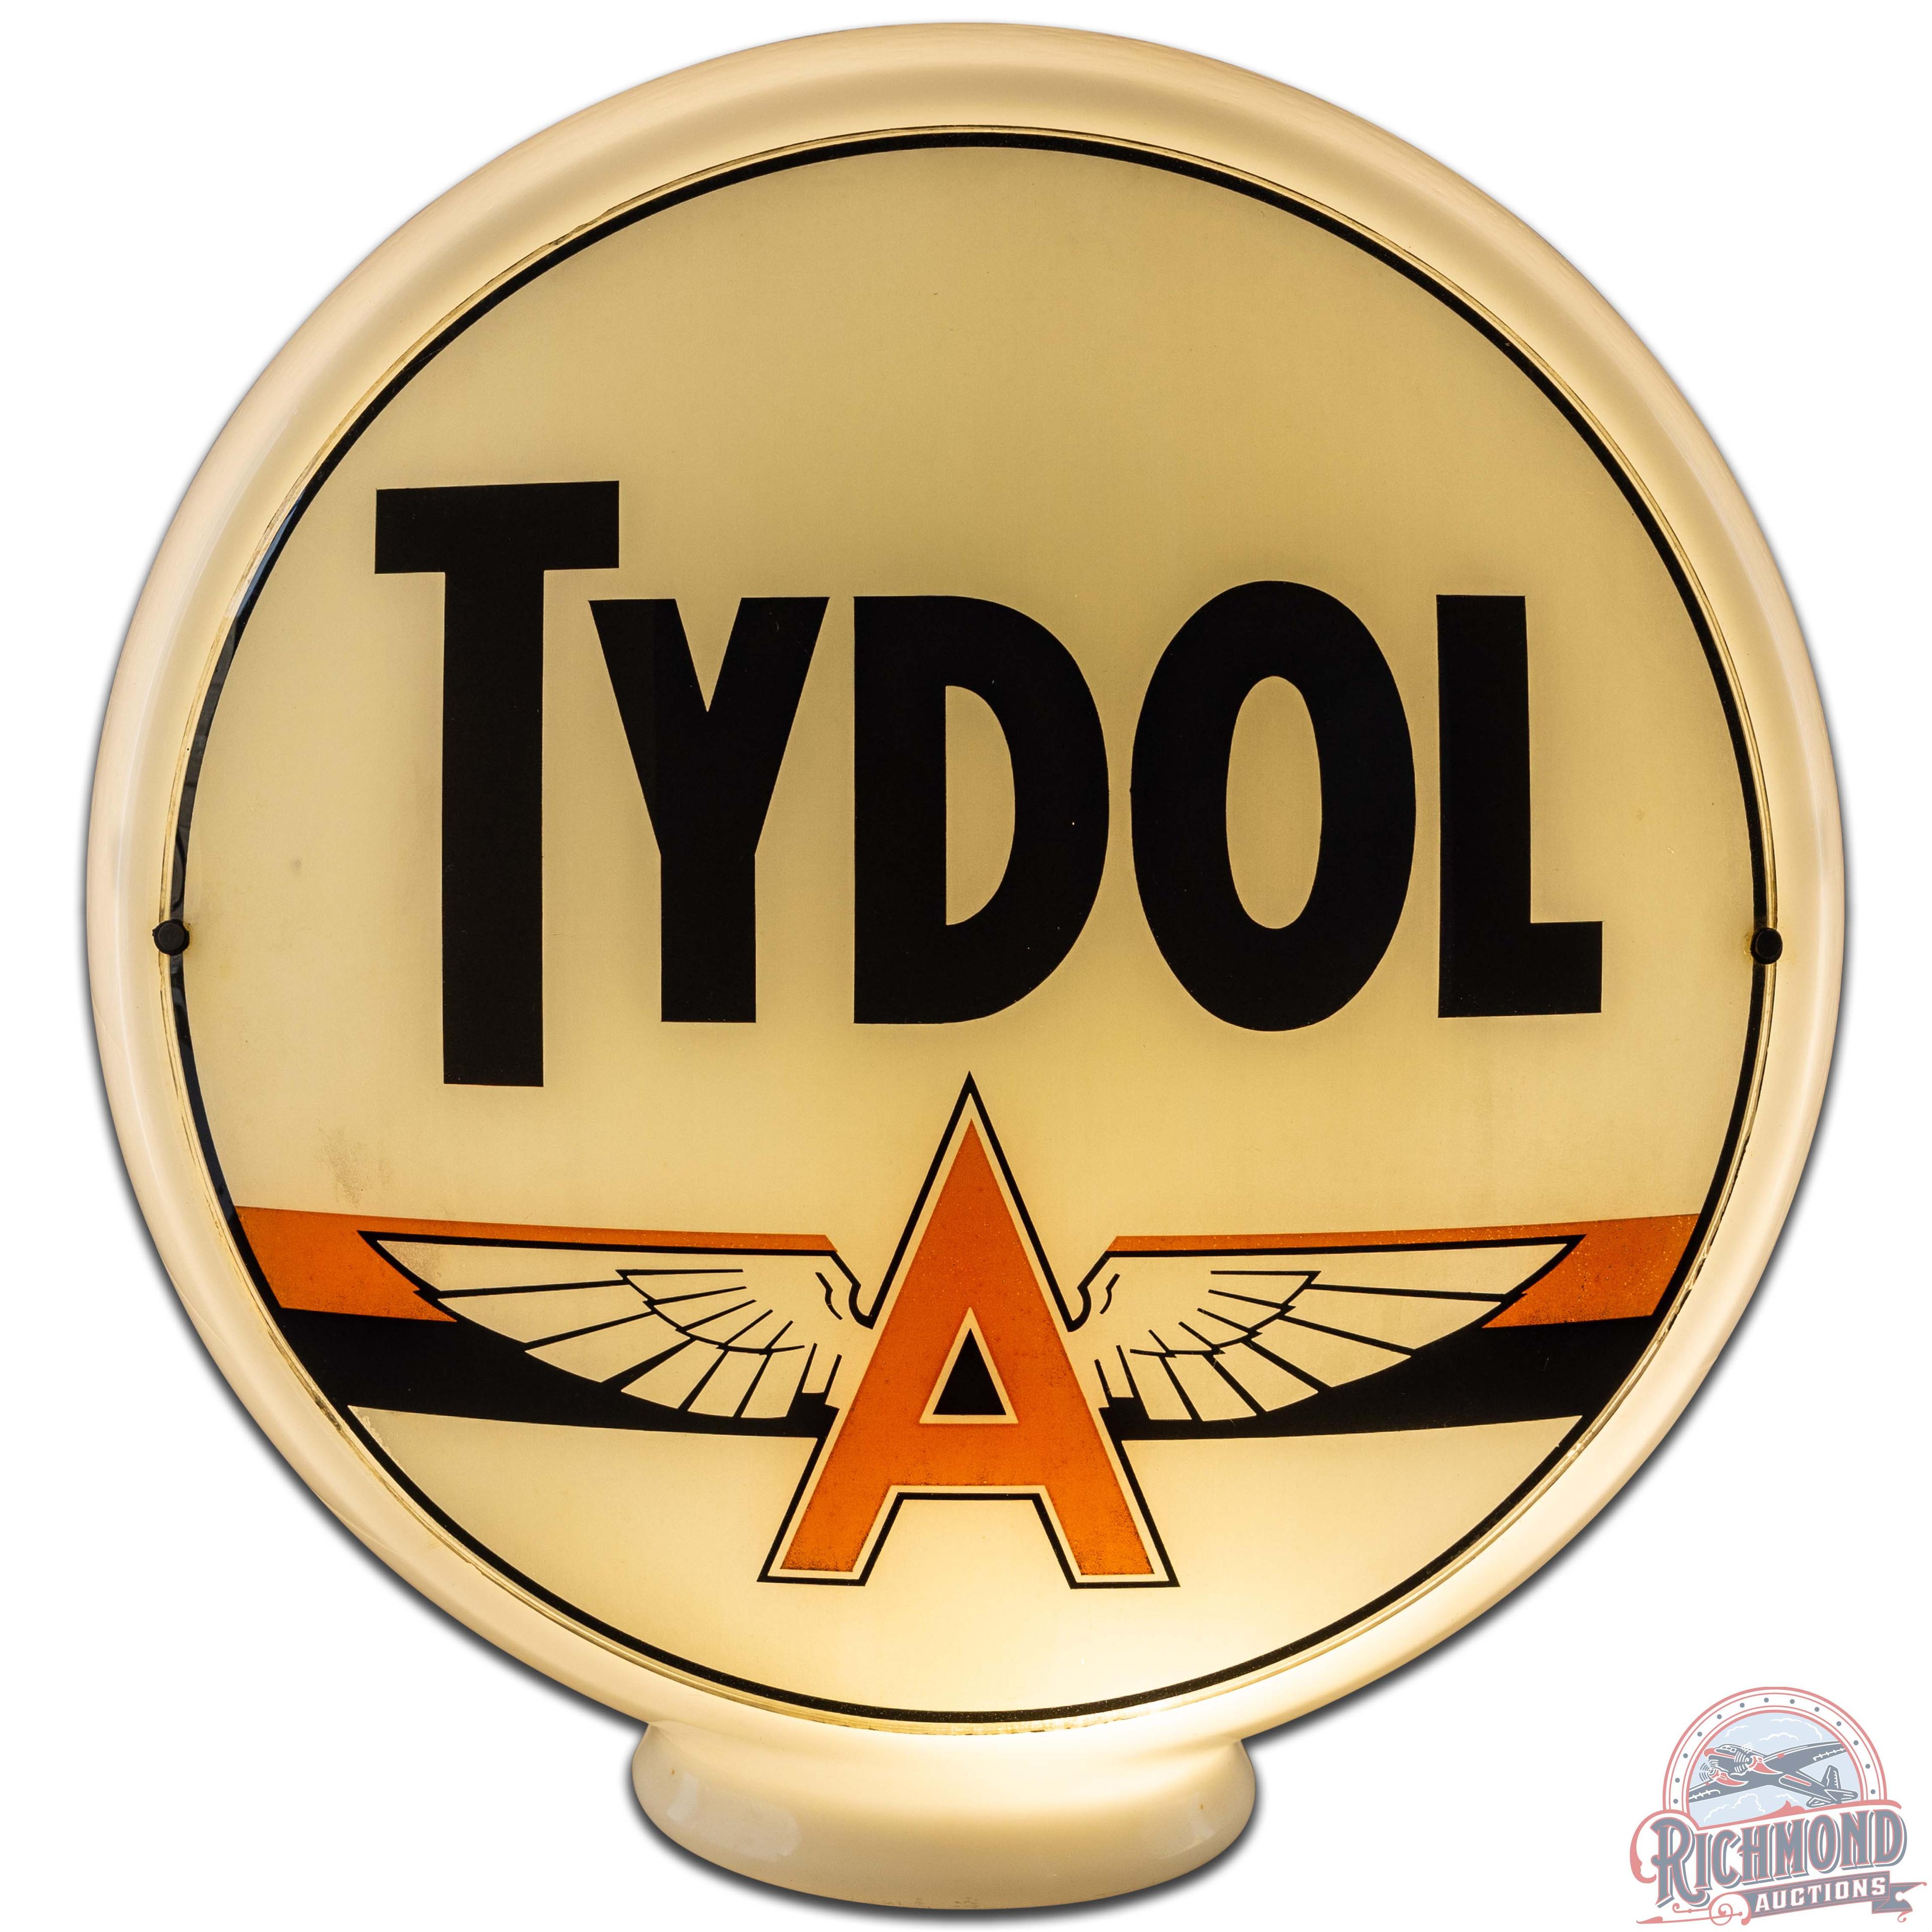 Tydol Gasoline 13.5" Complete Gas Pump Milk Glass Globe w/ Flying A logo